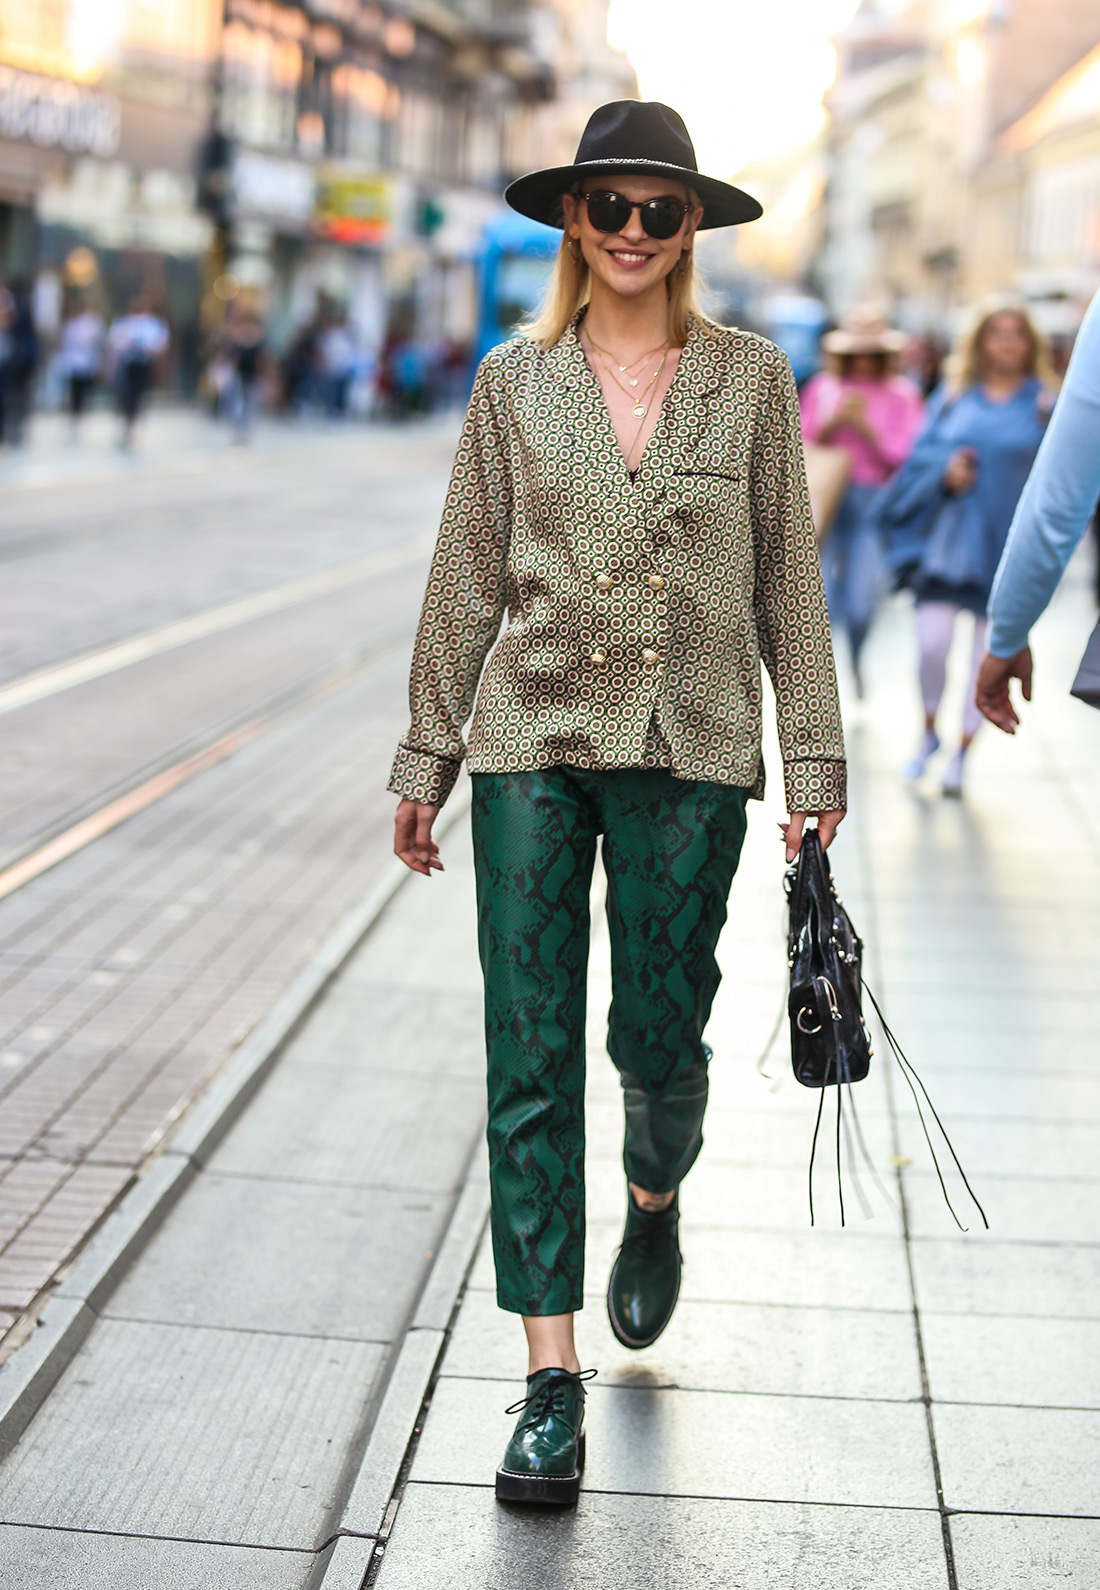 street style zagreb ženska moda jesen zima 2019/2020 zelene hlače zmijskog uzorka špica zagreb zagrebačka špica Lucija Lalić instagram